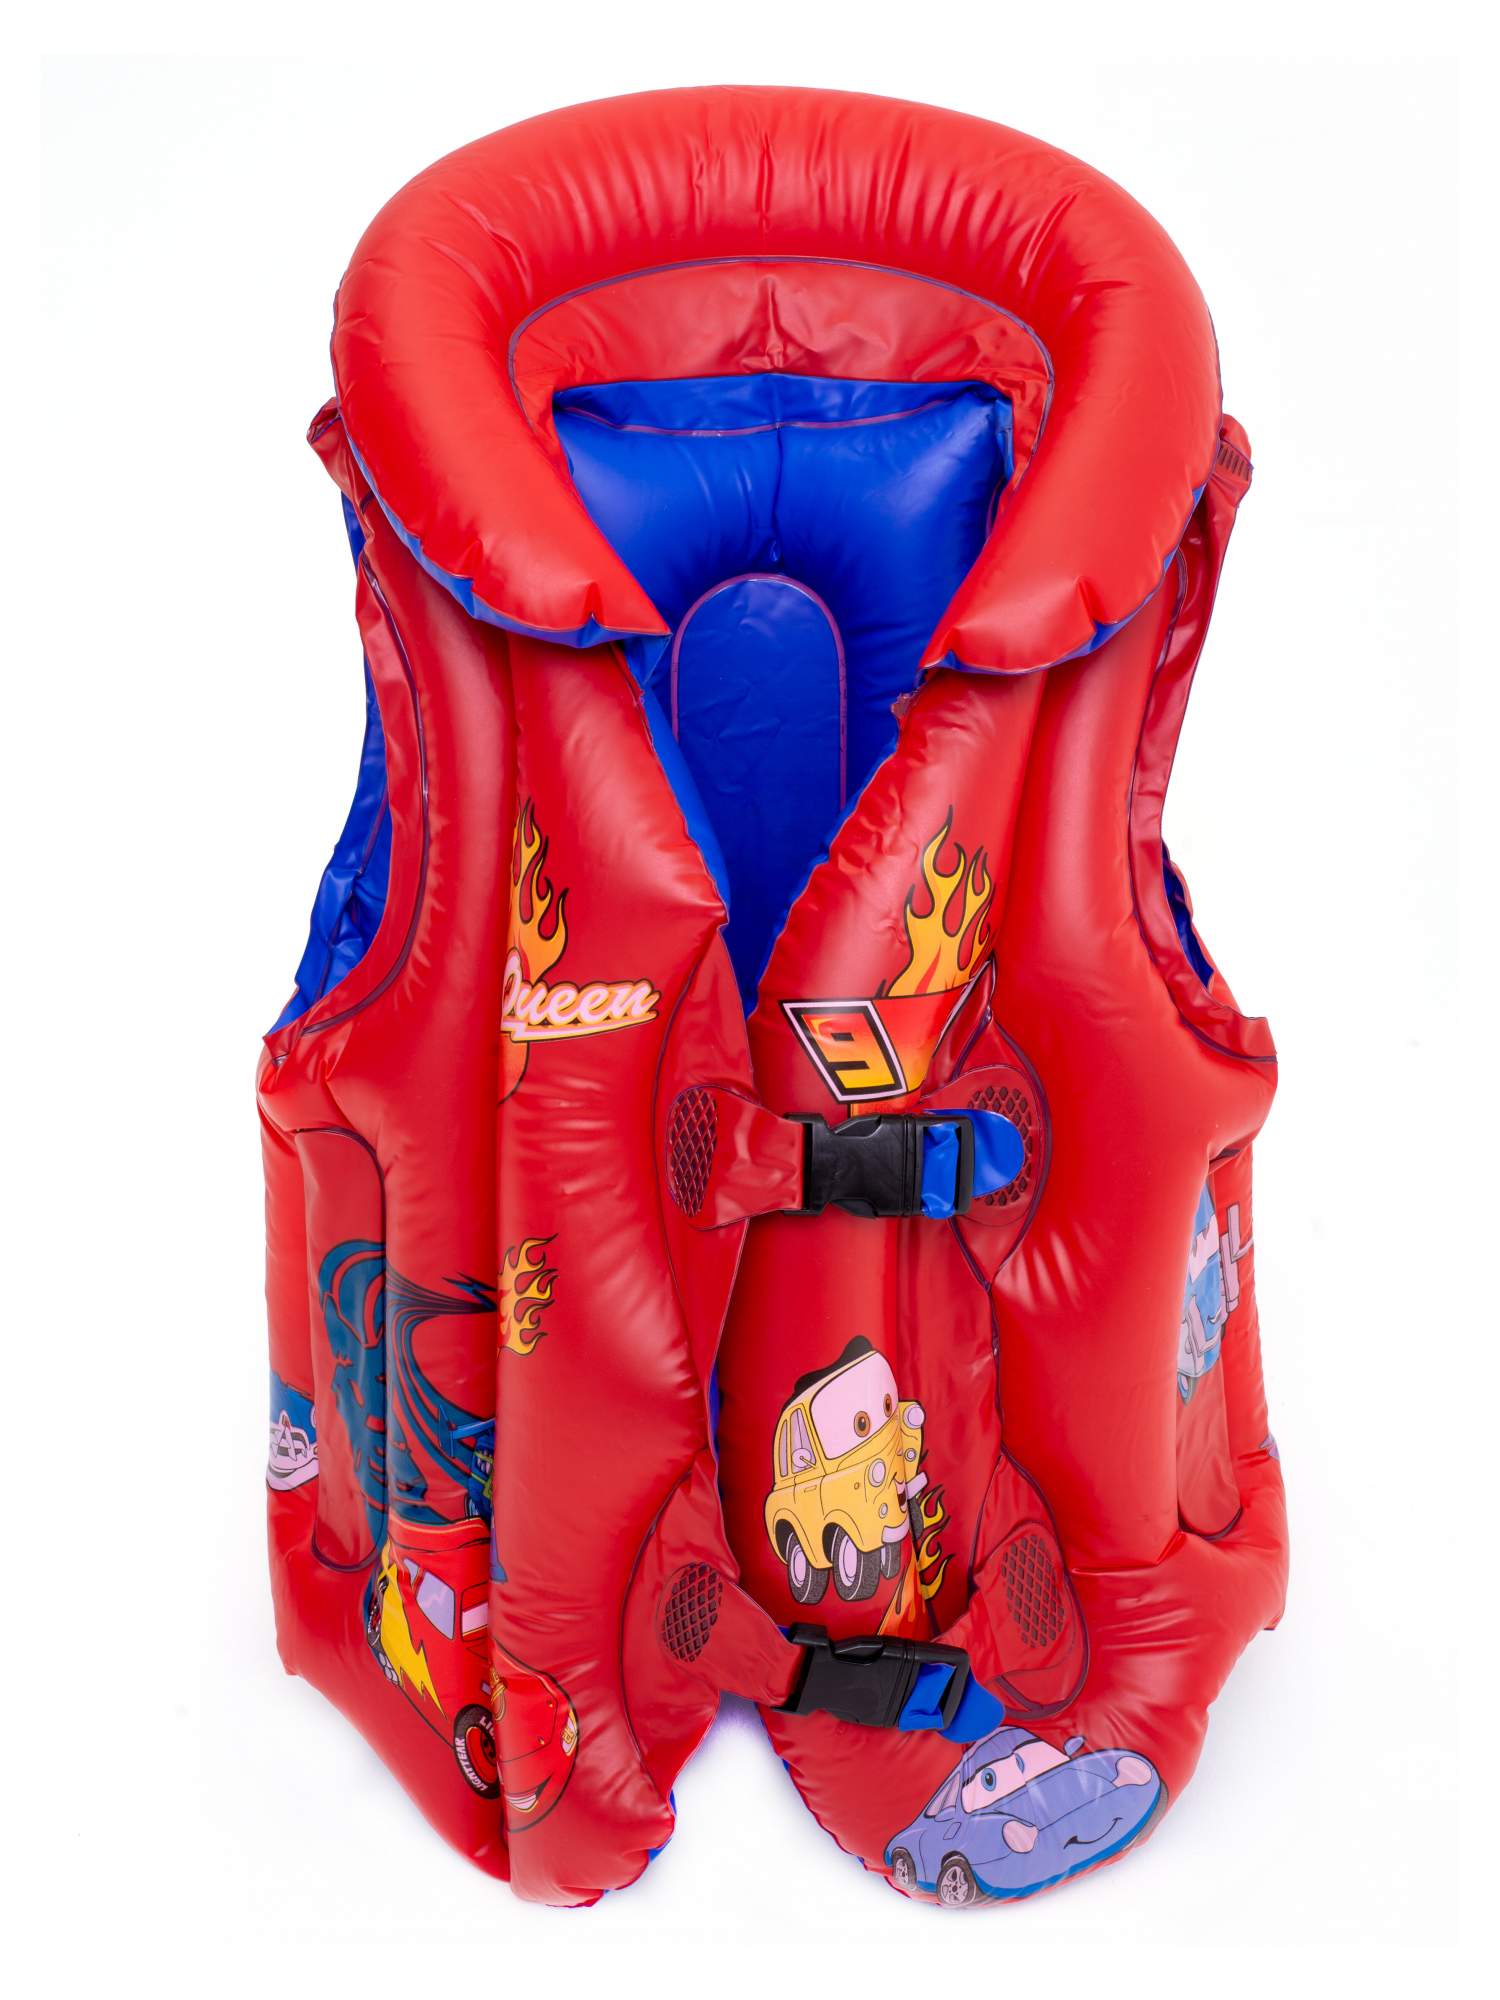 Плавательный жилет детский Solmax рисунок машинки 8-12 лет рост 130-150см красный SM90704